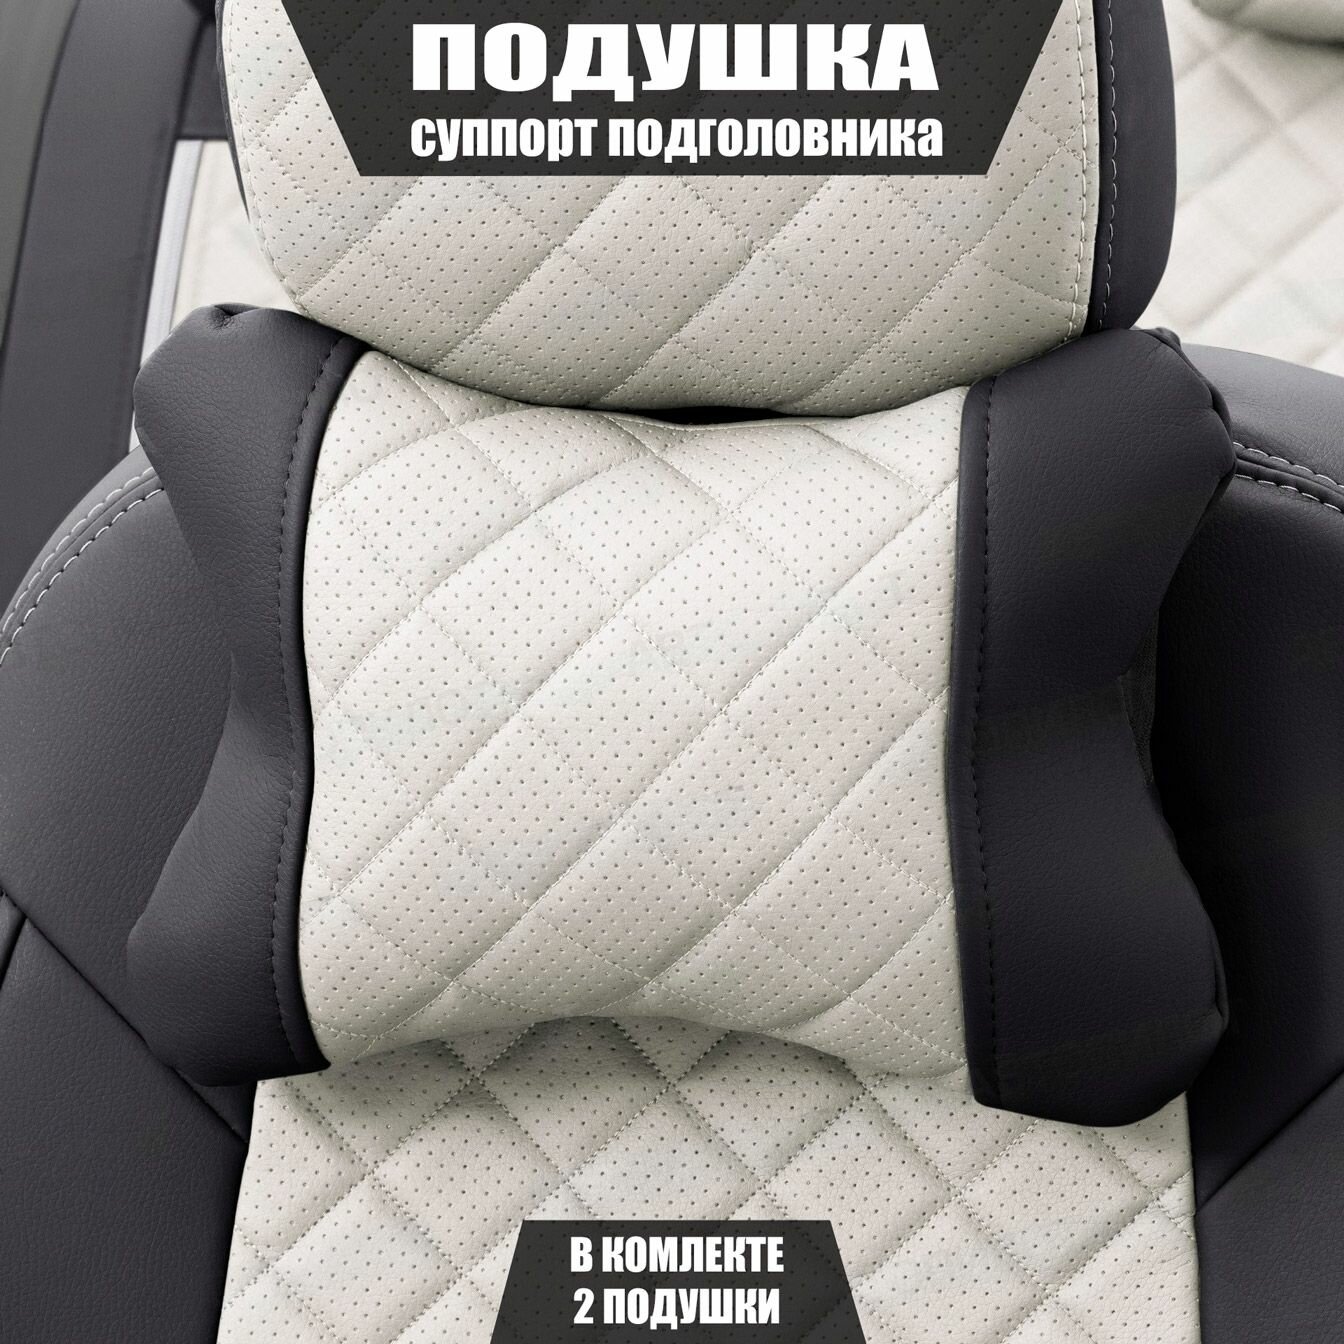 Подушки под шею (суппорт подголовника) для Сузуки Гранд Витара (2005 - 2008) внедорожник 3 двери / Suzuki Grand Vitara, Ромб, Экокожа, 2 подушки, Черный и белый